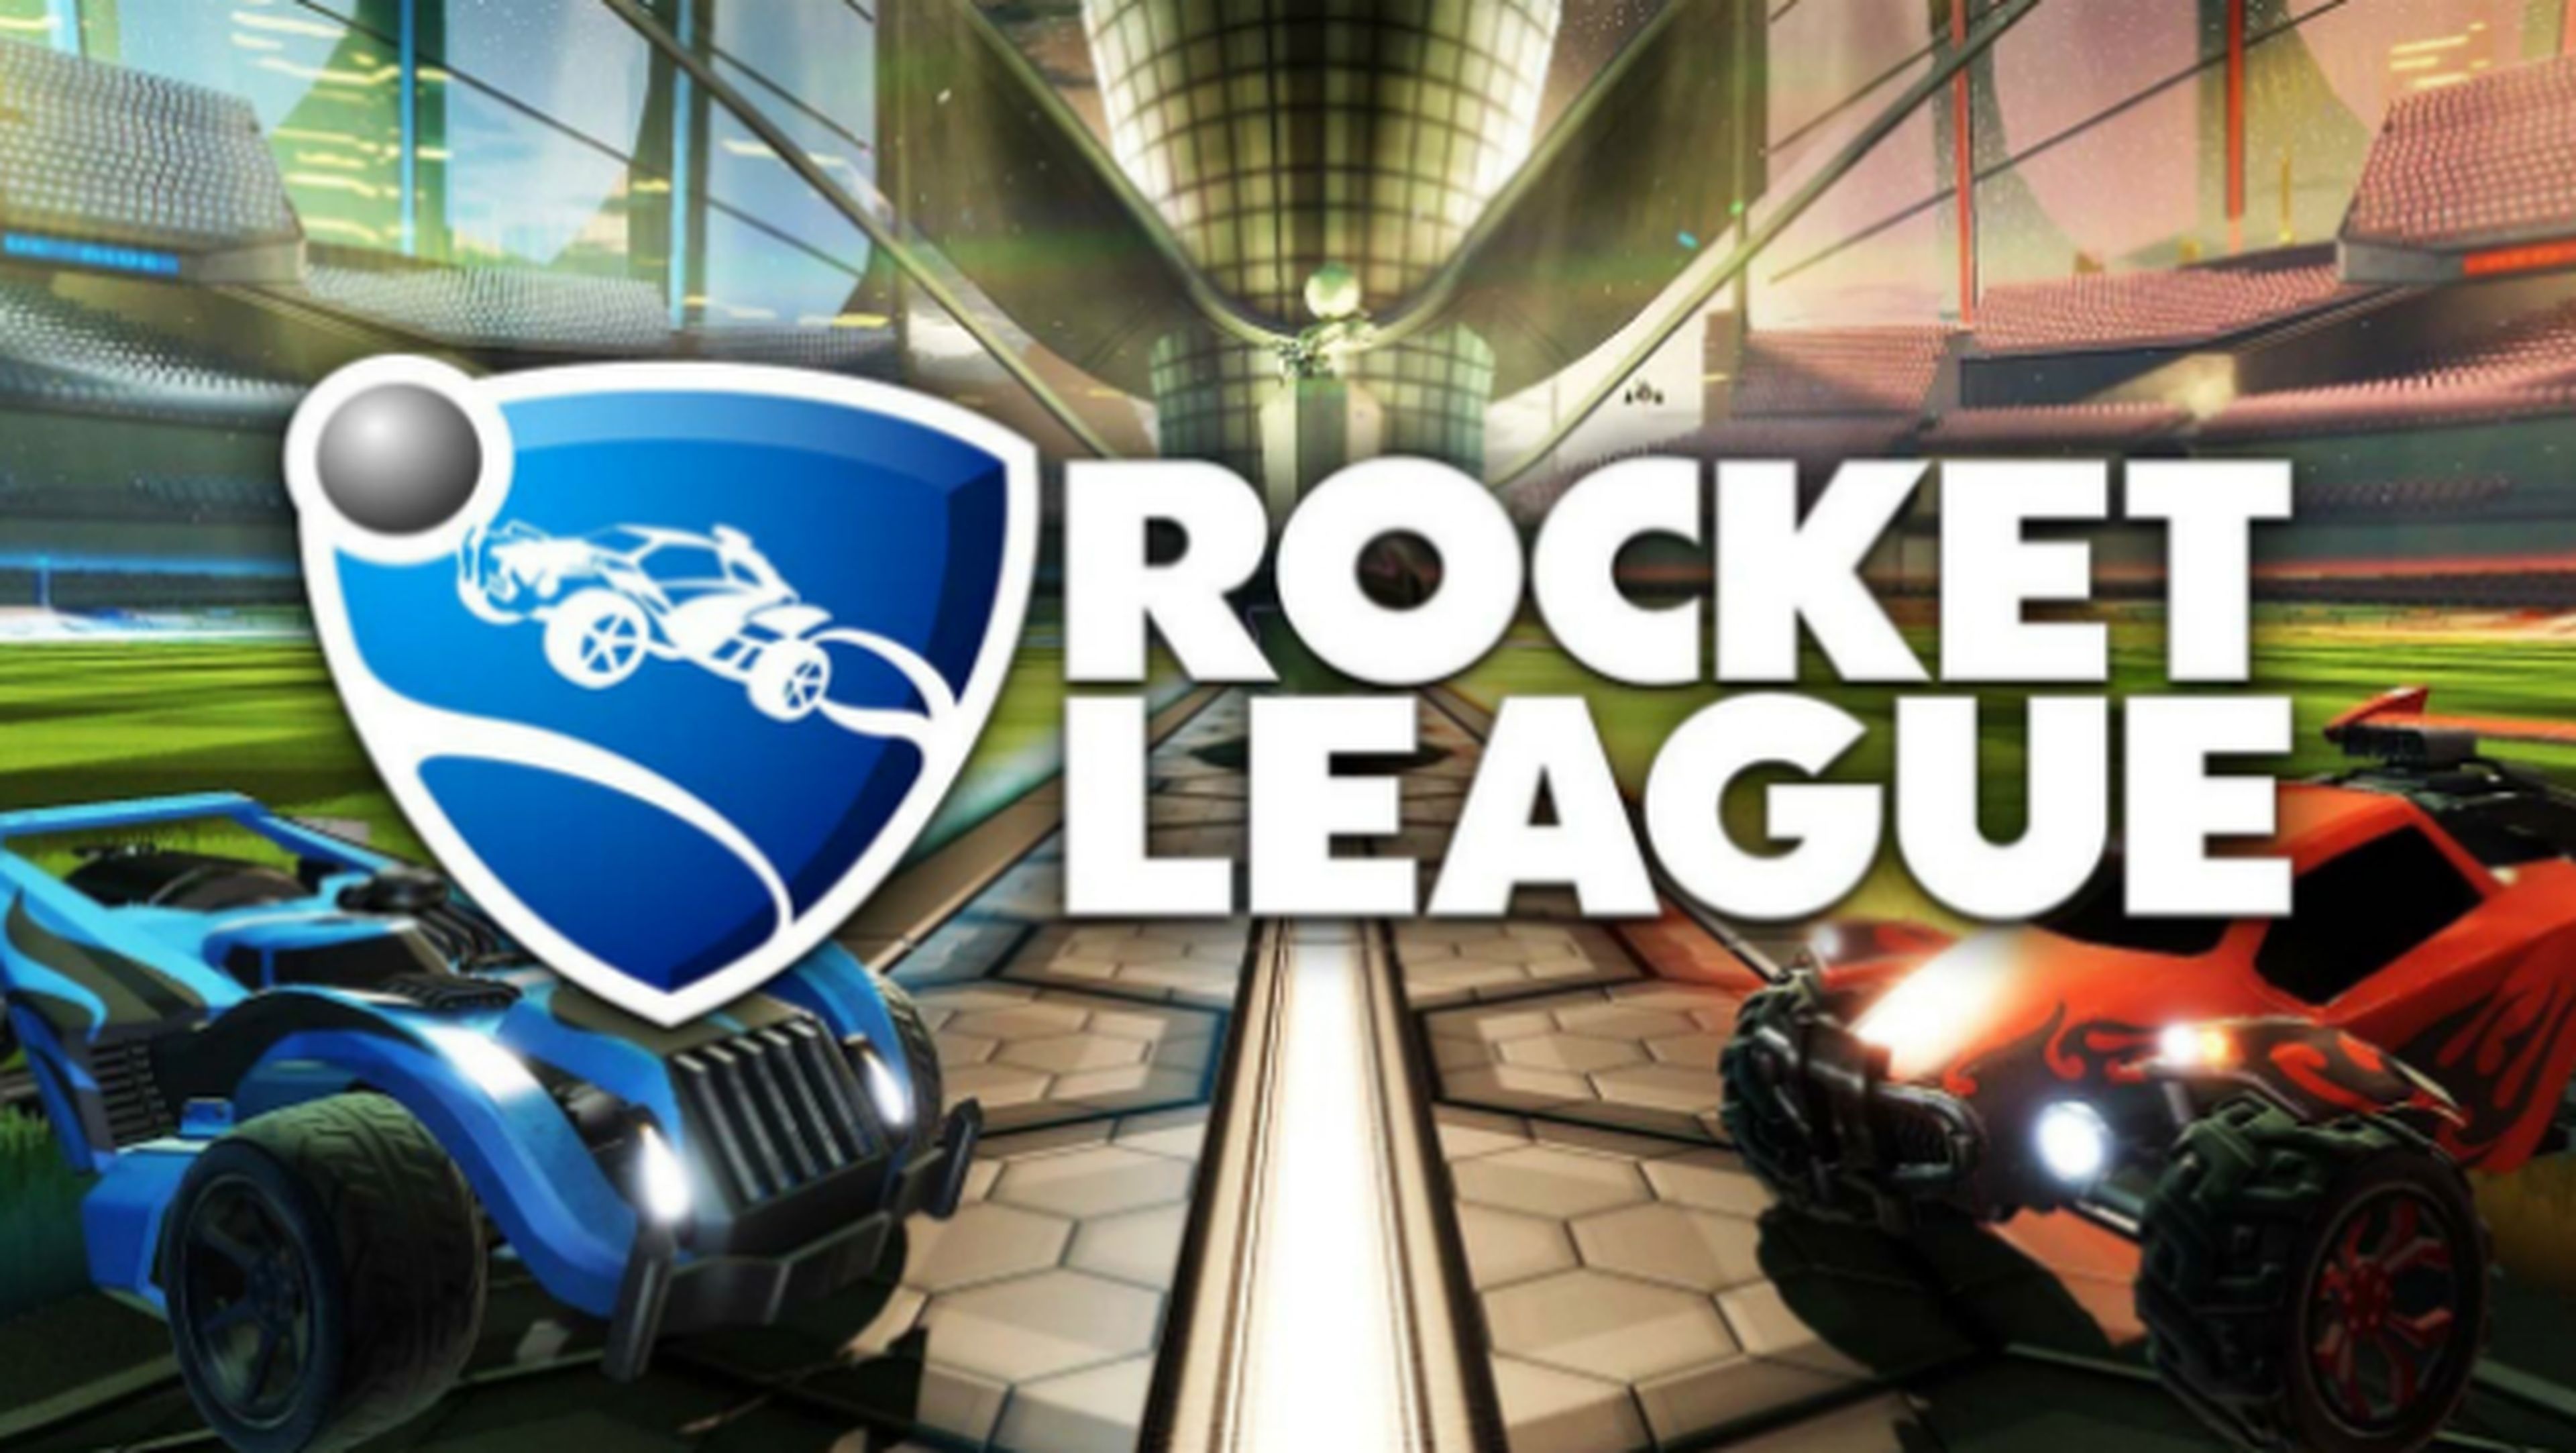 Ya puedes descargar Rocket League gratis de Steam.